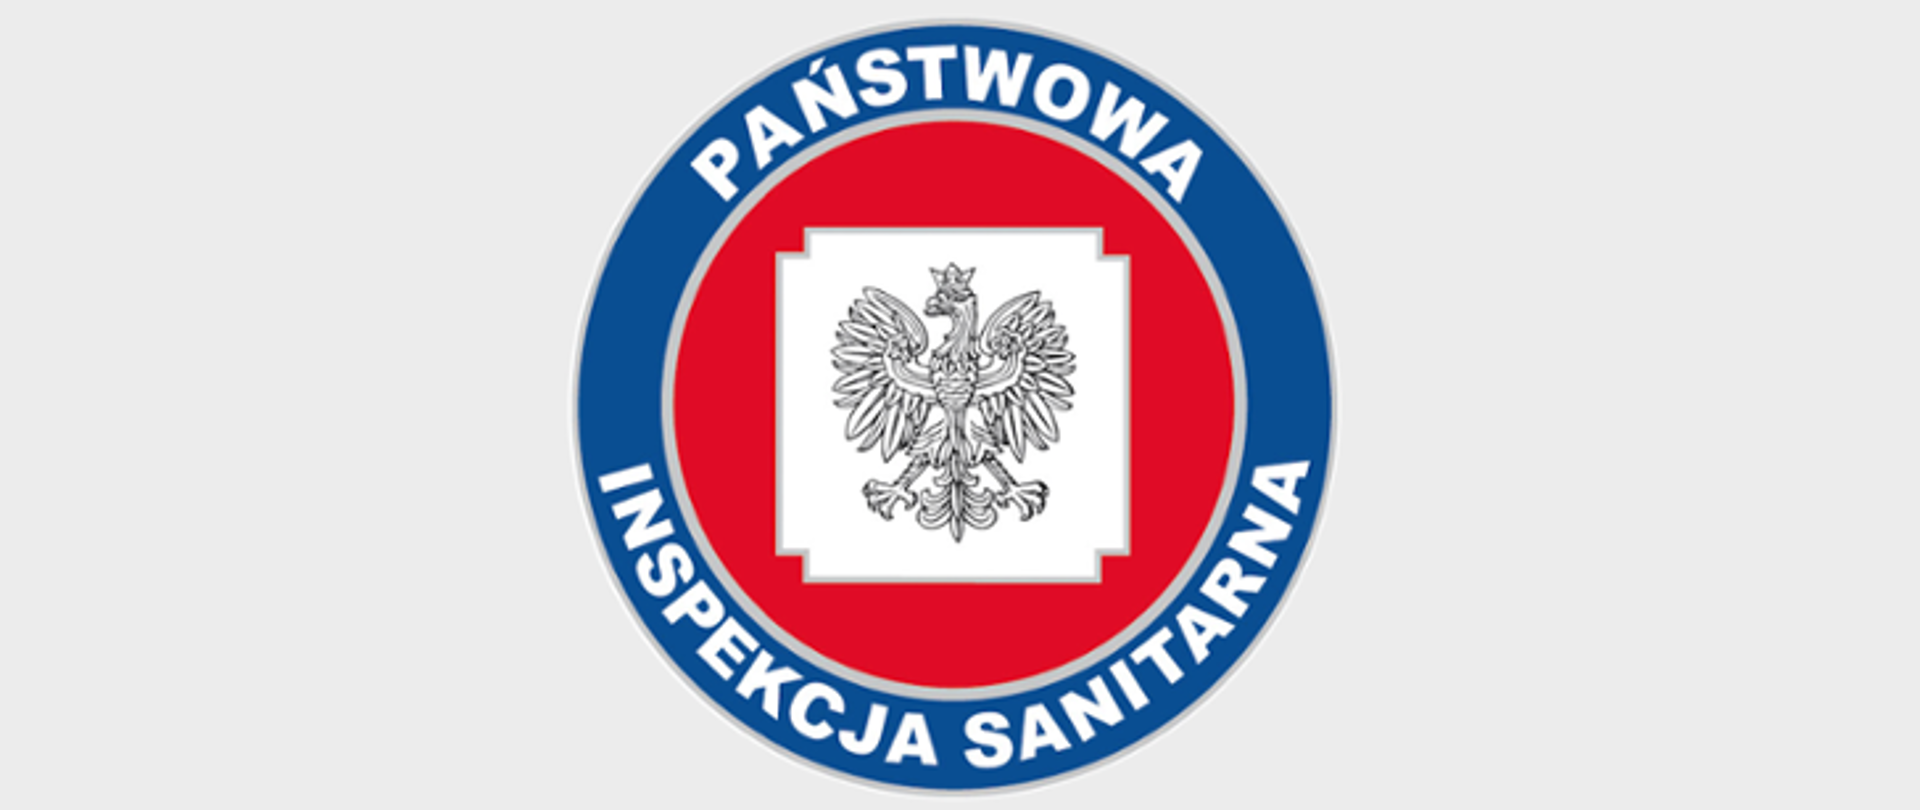 Zdjęcie przedstawia logo Państwowej Inspekcji Sanitarnej